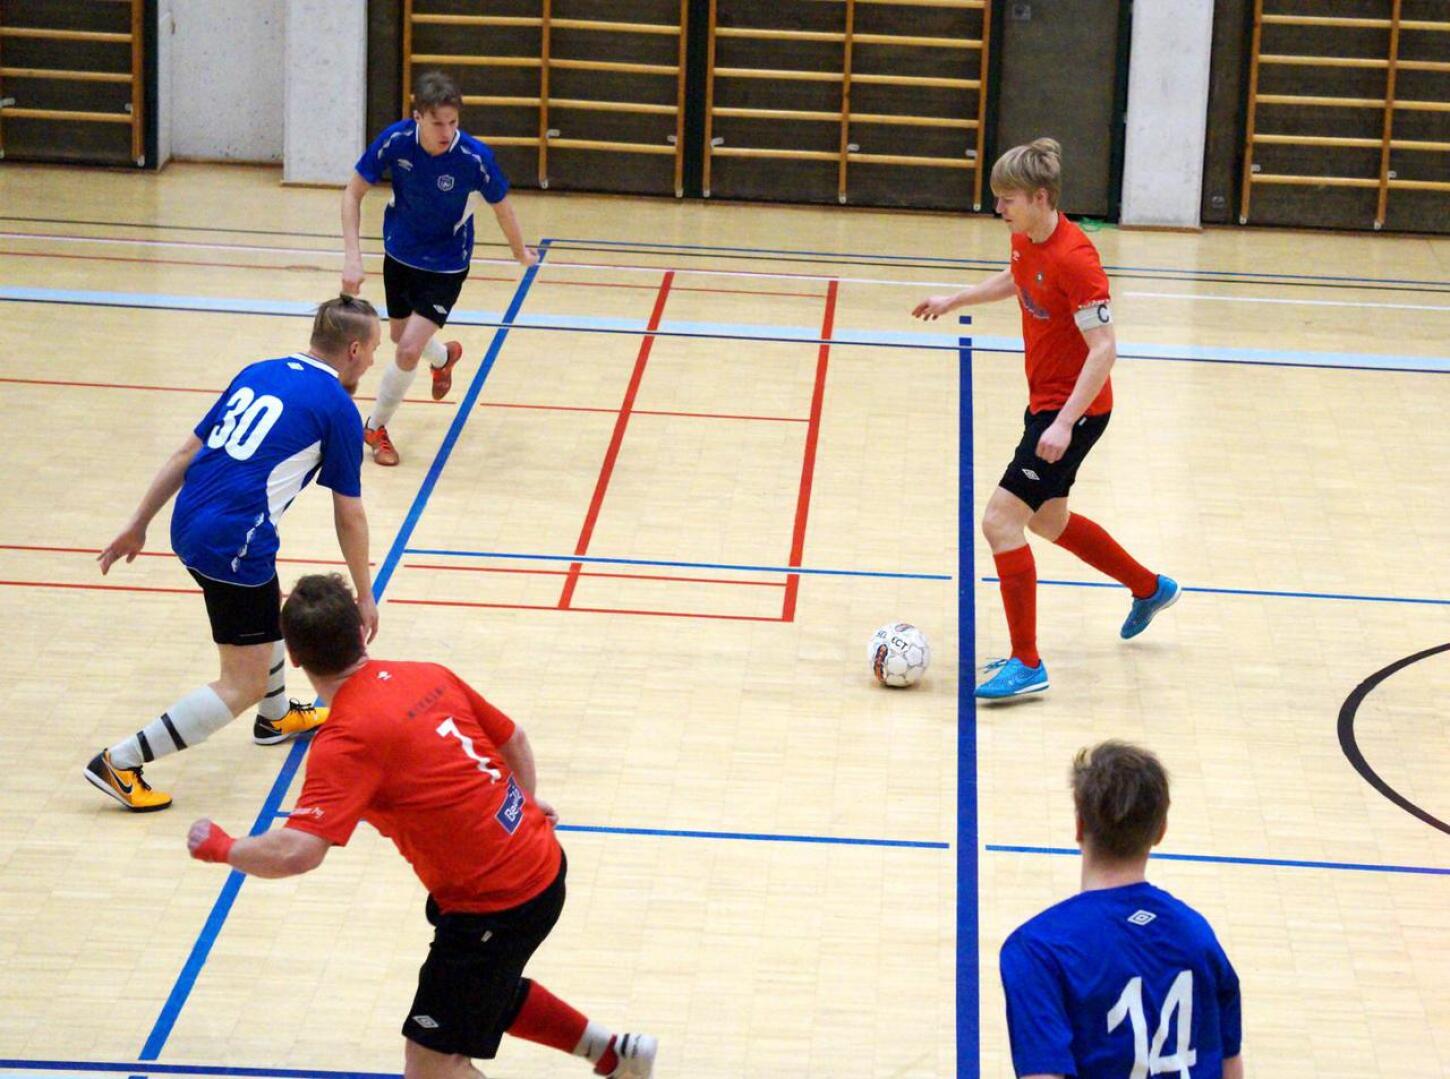 Punapaitojen kapteeni Risto Visuri (oik.) oli tehokkaalla pelipäällä viime viikonlopun turnauksessa tehden yhteensä kolme maalia.